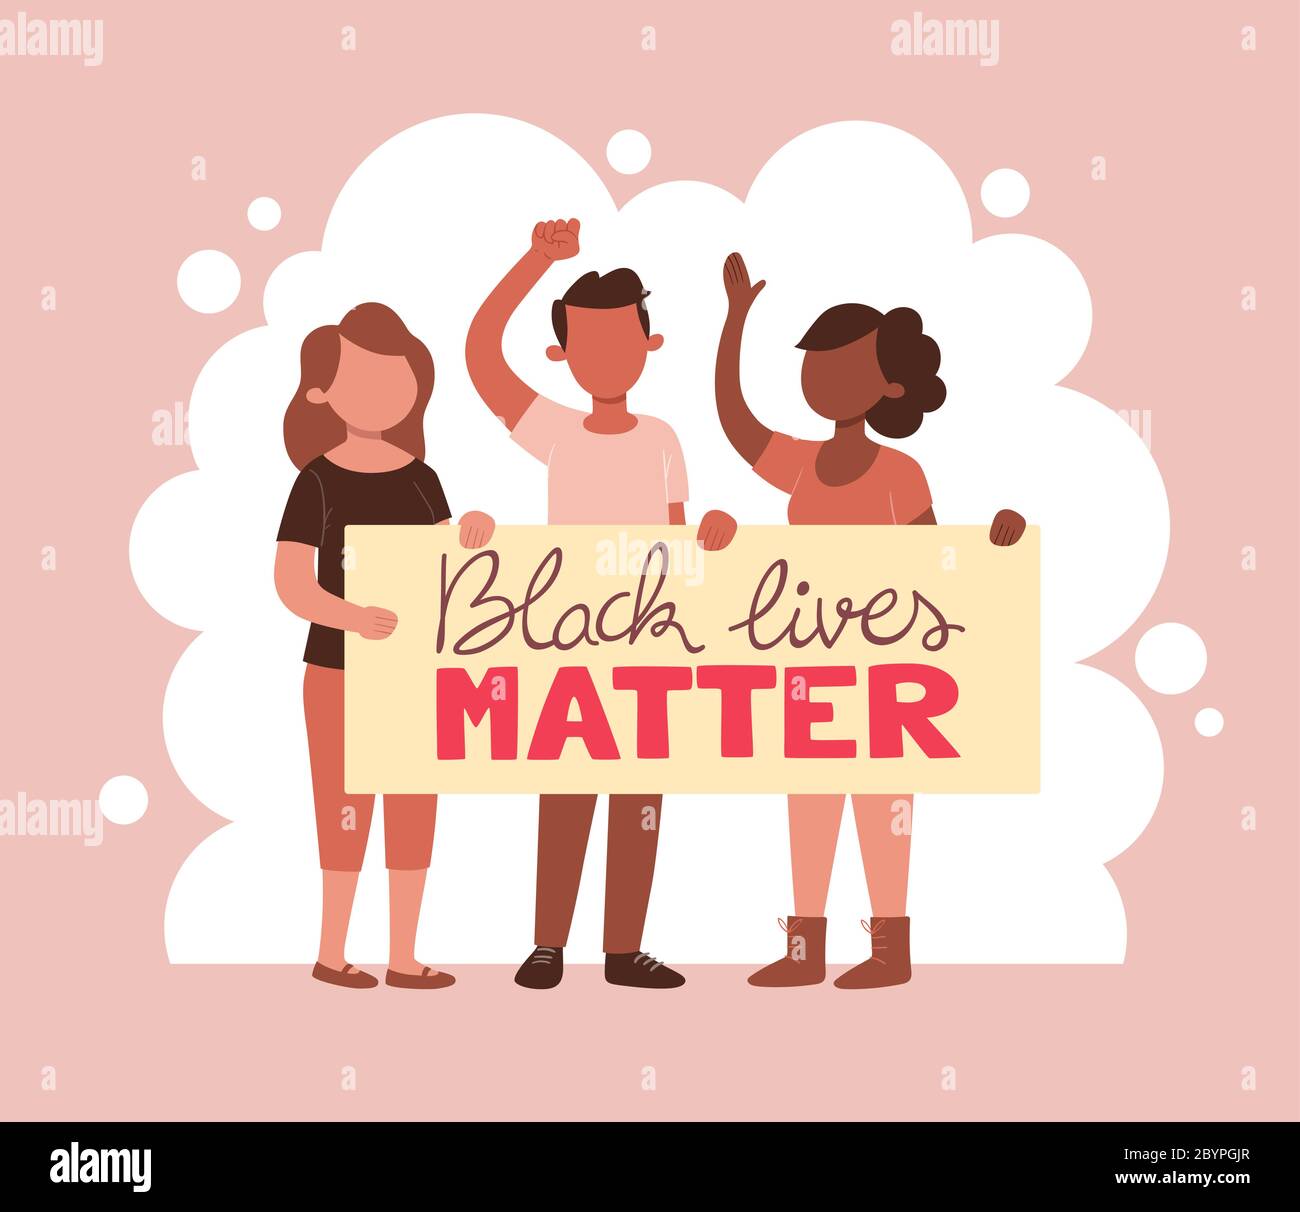 Tolérance et aucun racisme. Des militants afro-américains ont une bannière de protestation contre le racisme avec le slogan « Black Lives Matter ». Caricature i Illustration de Vecteur